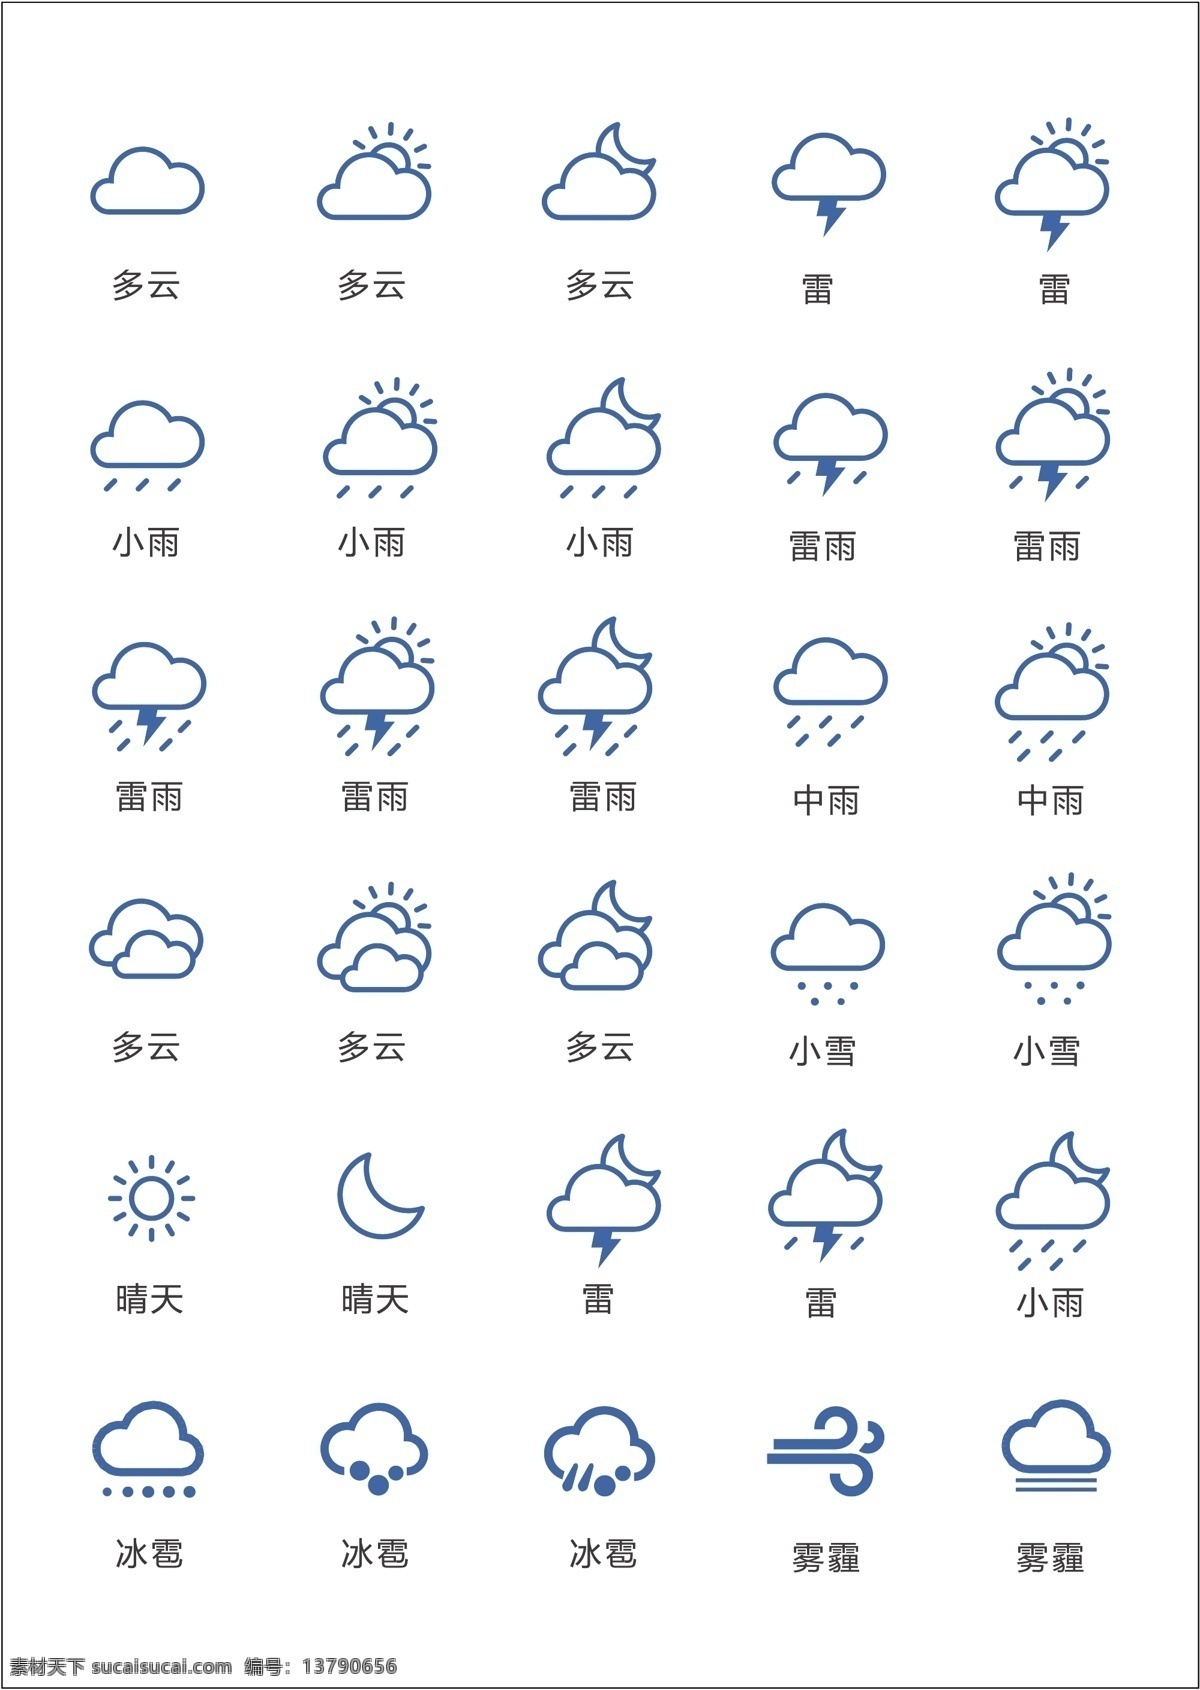 天气图标 下雨 多云 太阳 雾霾 常用图标 标志图标 公共标识标志